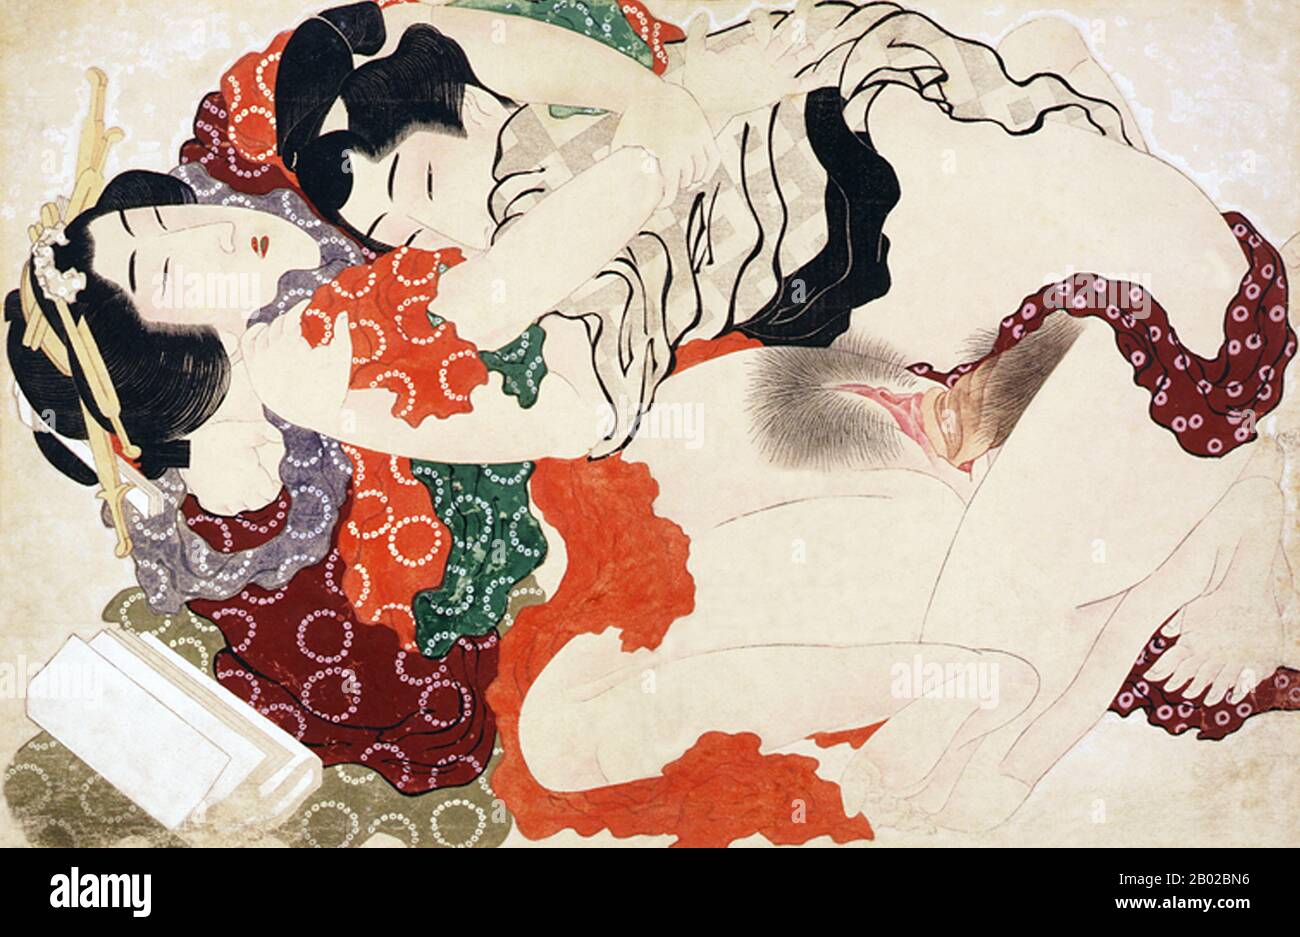 Katsushika Hokusai (葛飾 北斎, 31 octobre 1760 – 10 mai 1849) était un artiste japonais, peintre ukiyo-e et créateur d'estampes de la période Edo. Il a été influencé par des peintres tels que Sesshu, et d'autres styles de peinture chinoise. Né à Edo (aujourd'hui Tokyo), Hokusai est le plus connu comme auteur de la série d'impression de bois trente-six Vues sur le Mont Fuji (富嶽三十六景 Fugaku Sanjūroku-kei, c. 1831) qui comprend l'imprimé reconnu à l'échelle internationale, La Grande vague de Kanagawa, créée au cours des années 1820. Hokusai a créé la "trente-Six Vues" à la fois comme réponse à un boom de voyage domestique et dans le cadre d'un obsessi personnel Banque D'Images